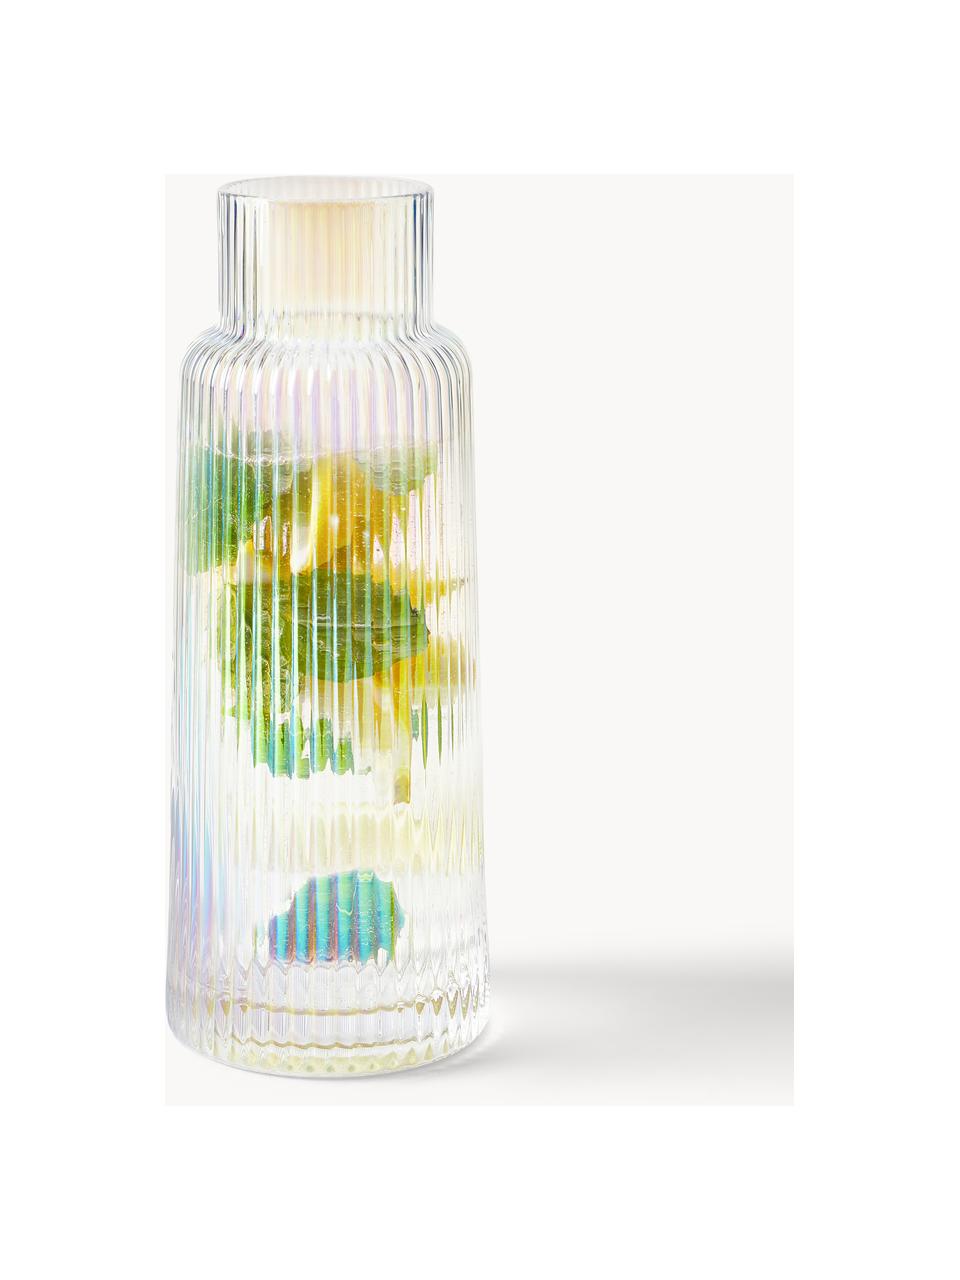 Carafe à eau en verre irisé et strié Minna de Guglielmo Scilla, 1,1 L, Verre, soufflé bouche, Chrome, transparent, irisé, 1,1 L